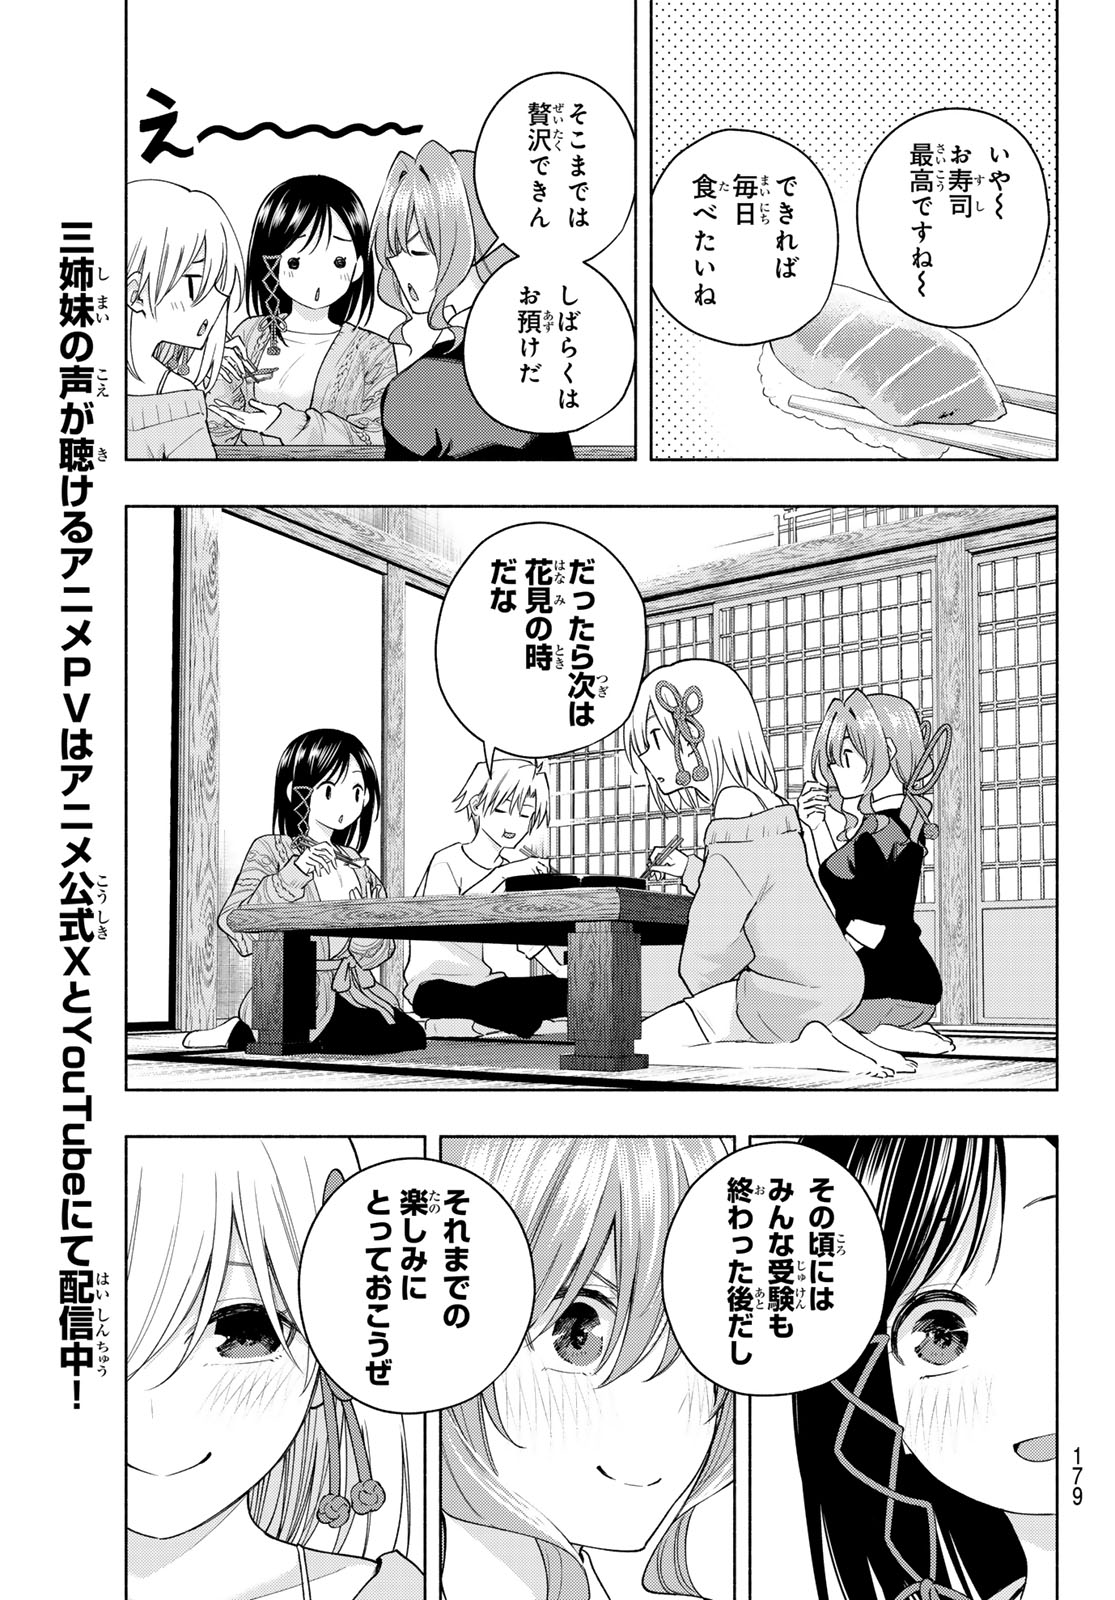 Amagami-san Chi no Enmusubi - Chapter 131 - Page 15